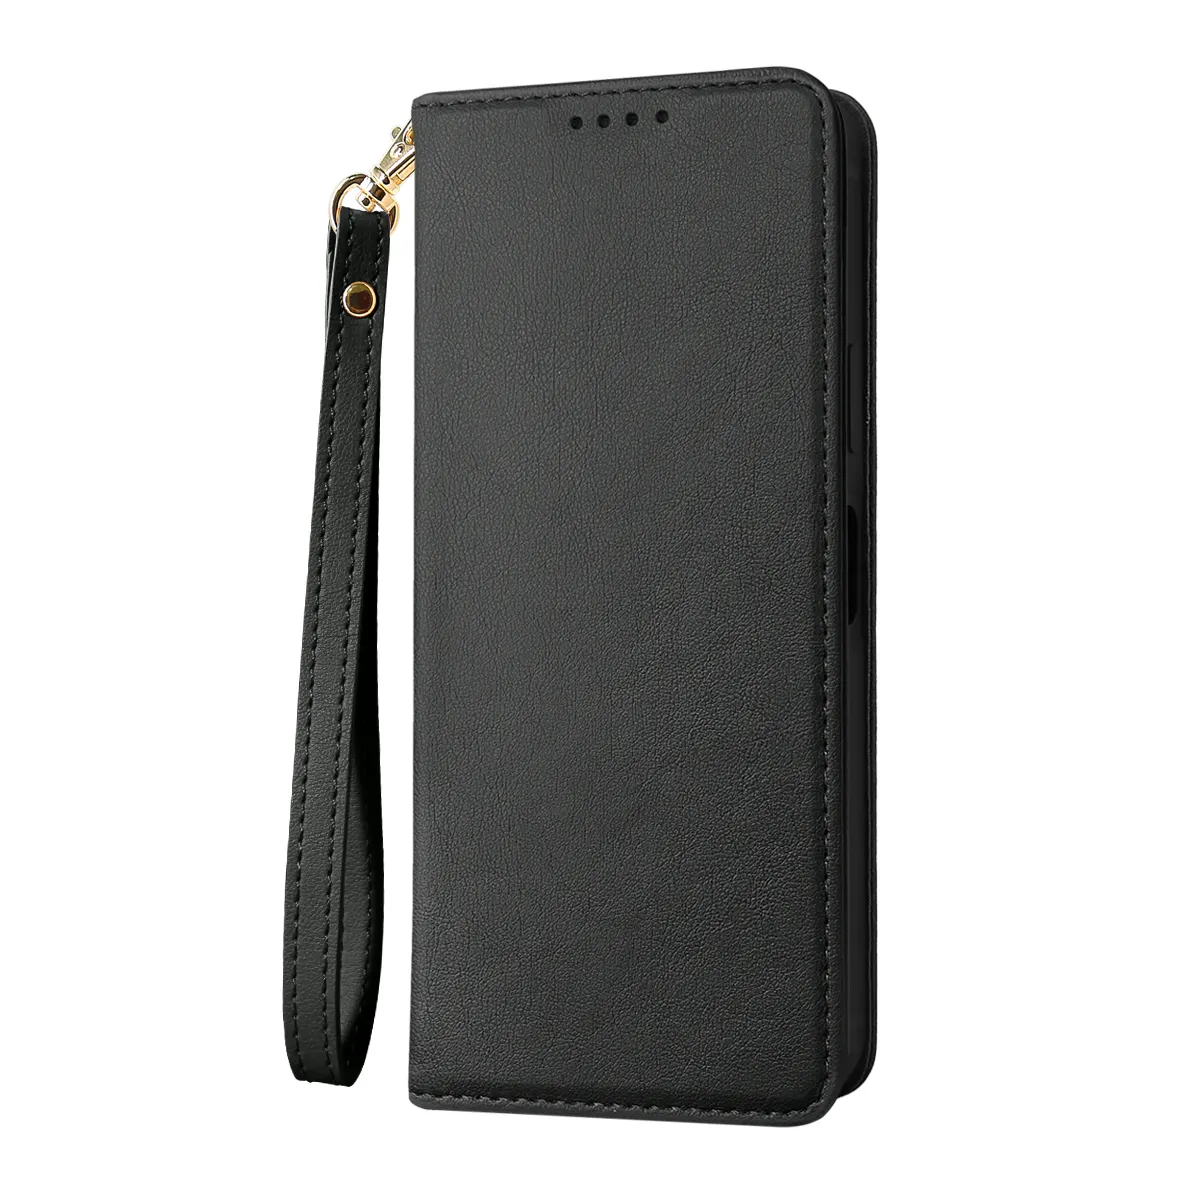 Venta al por mayor Best Seller Original Magnetic Wallet Funda de cuero para teléfono Flip Cover Set con ranura para tarjeta para Sony Xperia10 III